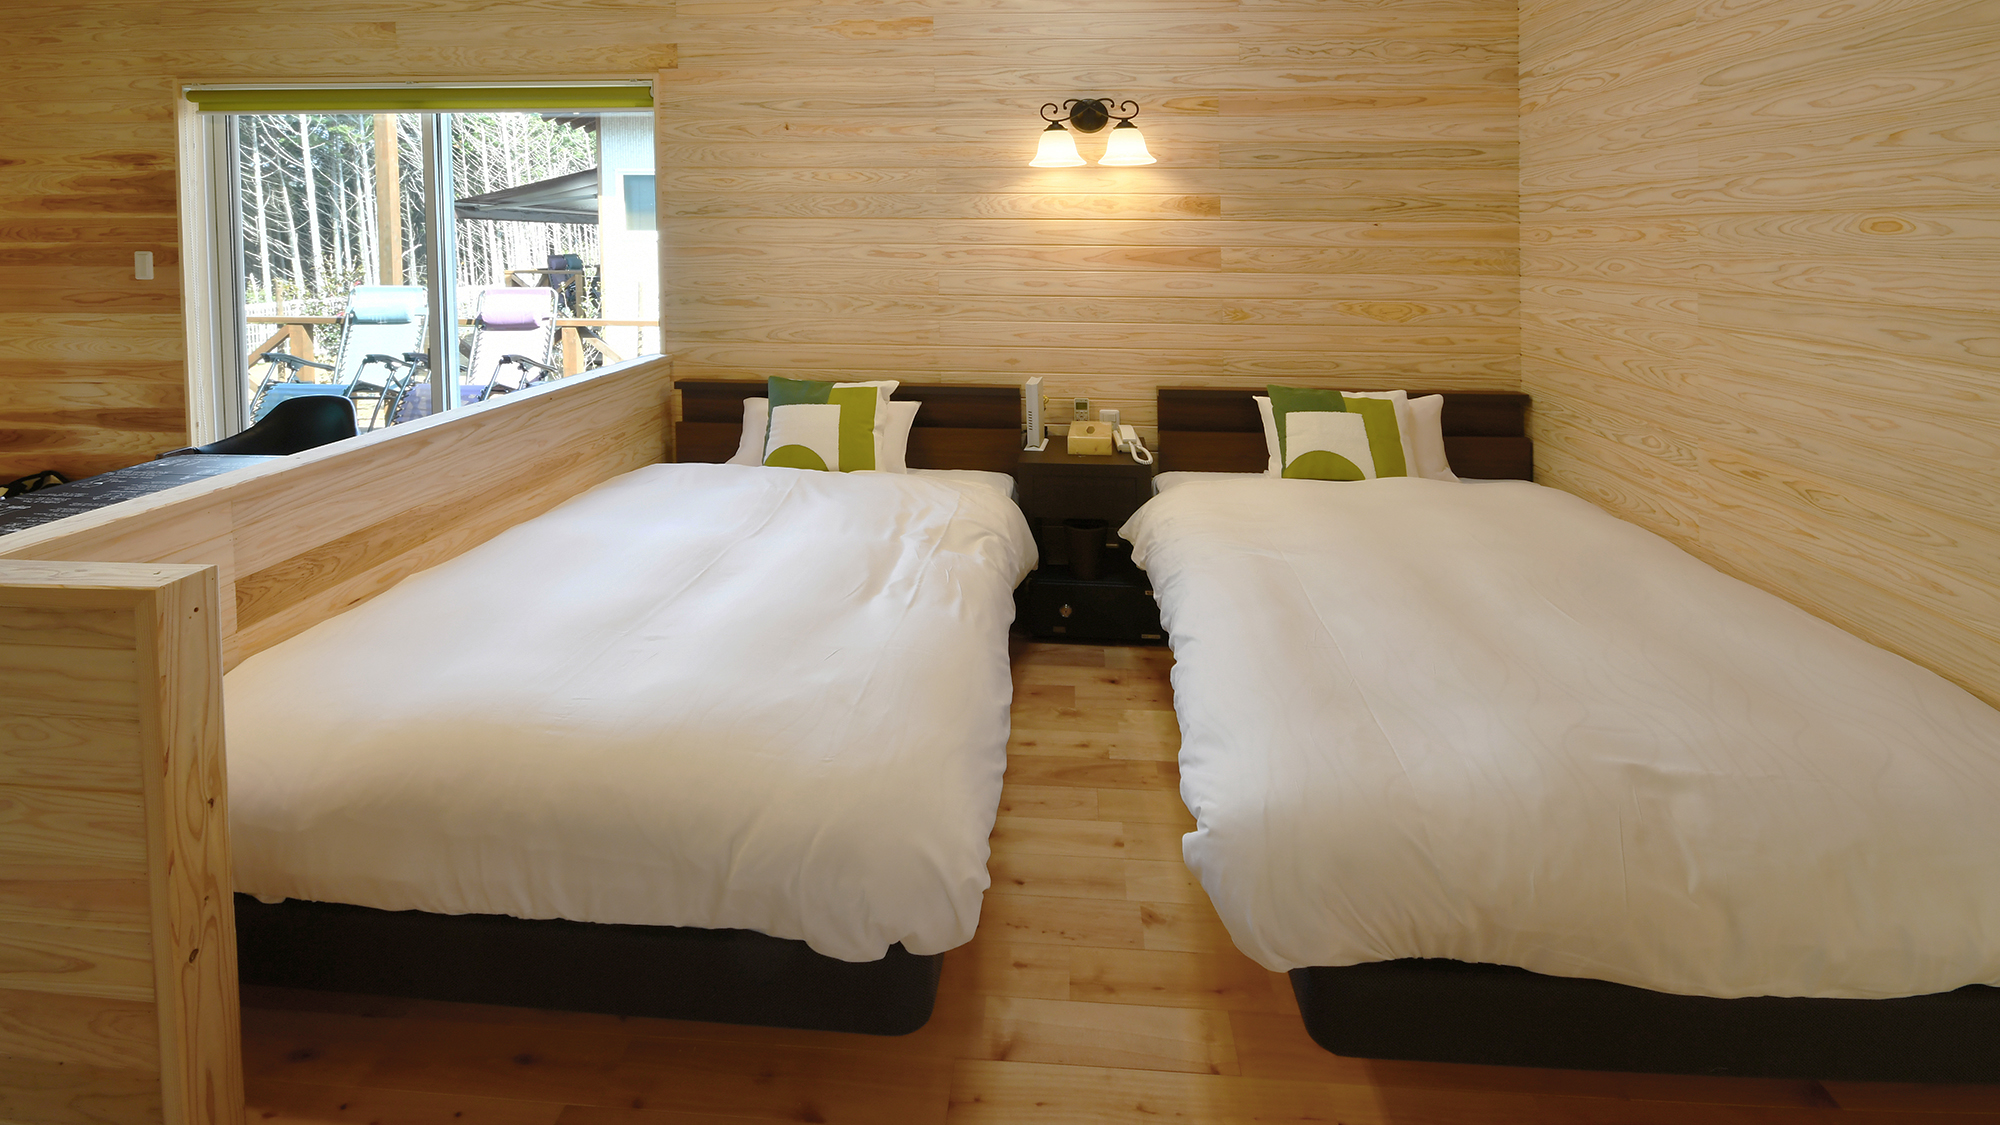 ホテル仕様・高品質のポケットコイルのマットレスであるシモンズを採用したベッド。